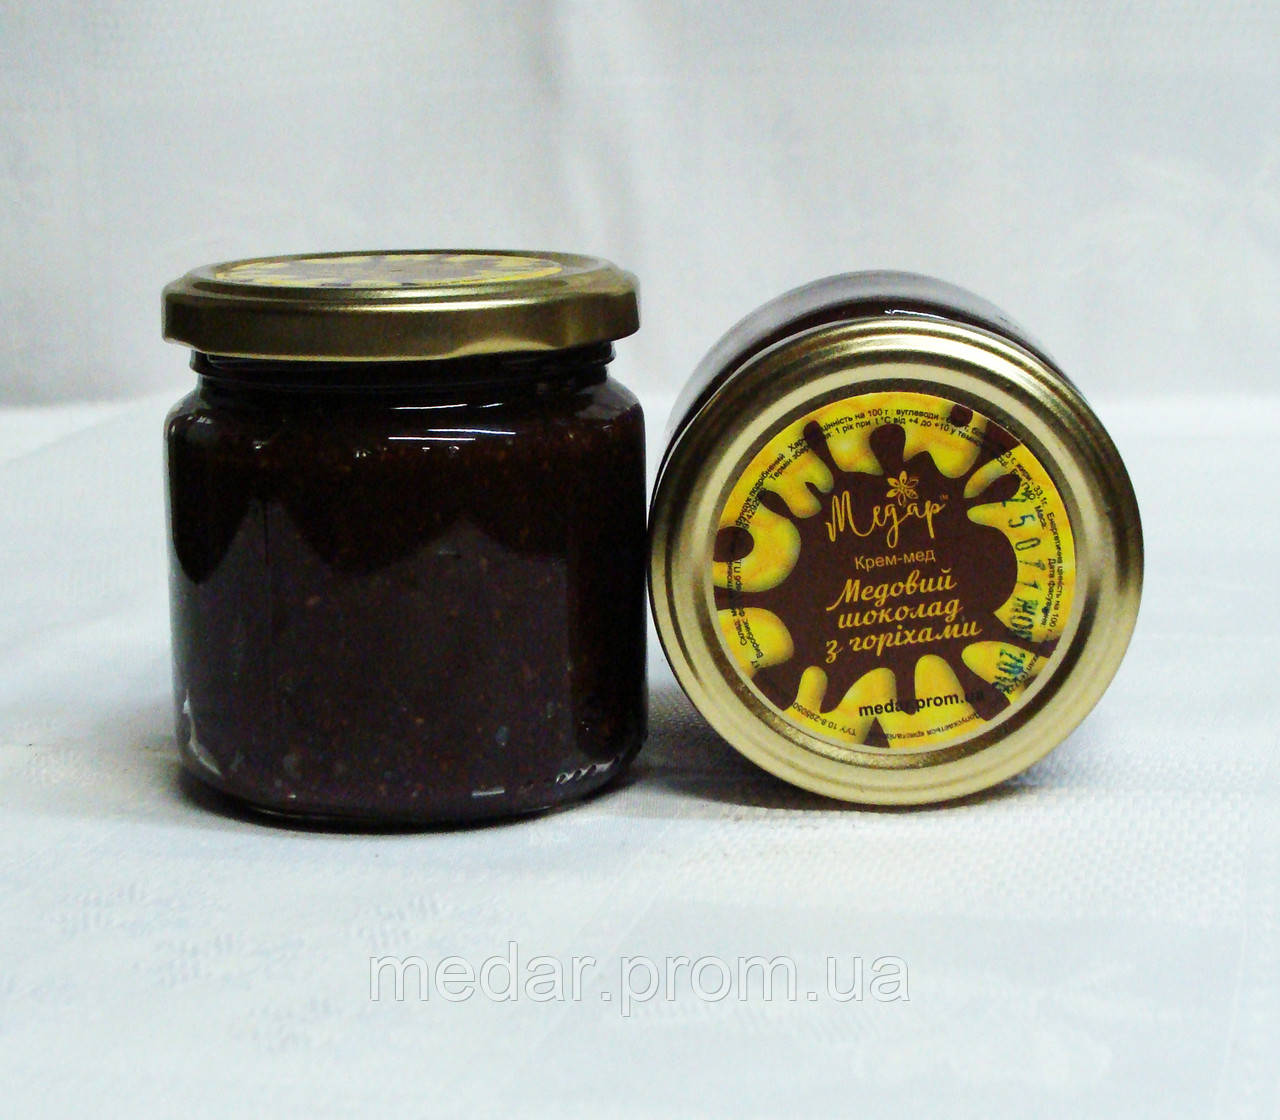 Шоколадний мед з волоським горіхом та кококсом,0,2л